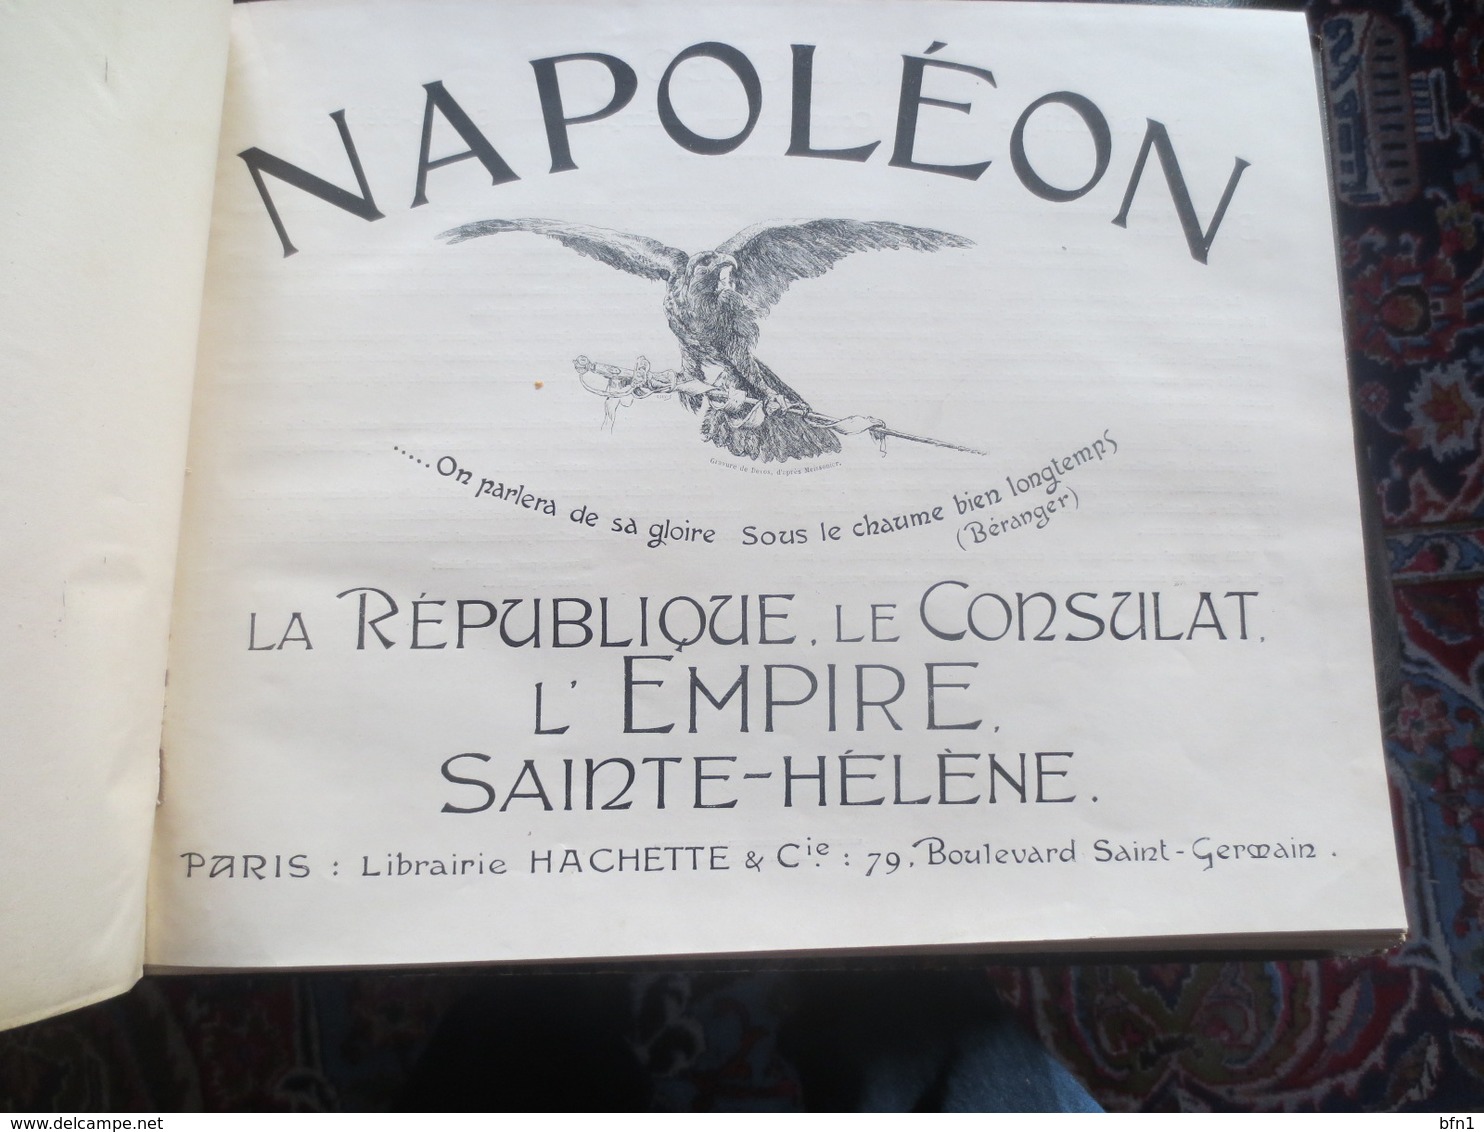 Napoleon - La Republique, Le Consulat, L'Empire Sainte-Helene - Historia